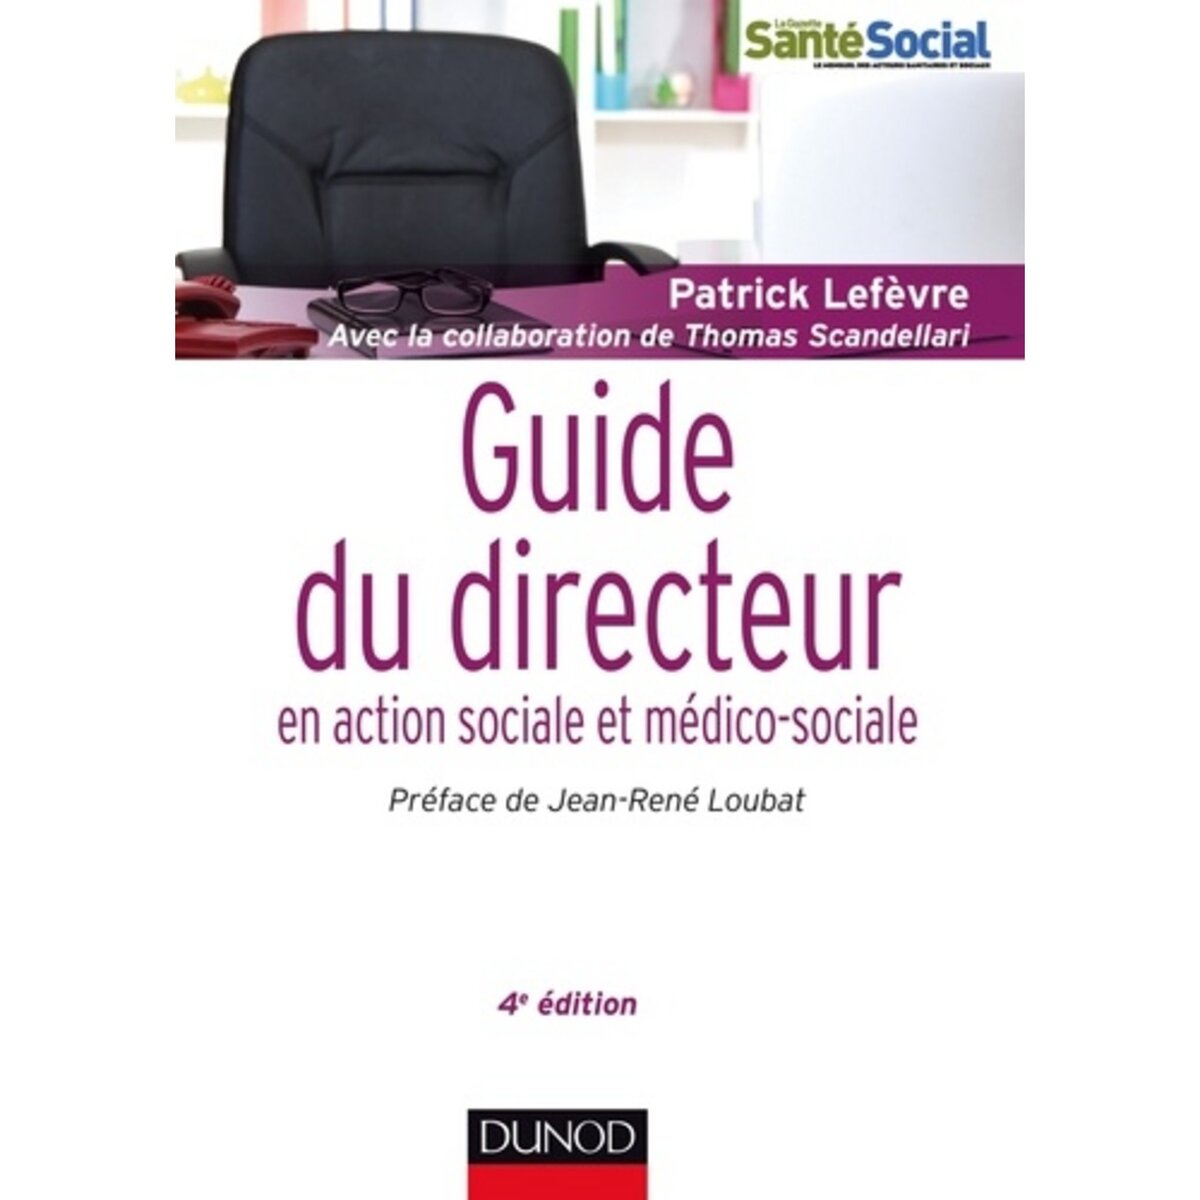  GUIDE DU DIRECTEUR EN ACTION SOCIALE ET MEDICO-SOCIALE. 4E EDITION, Lefèvre Patrick